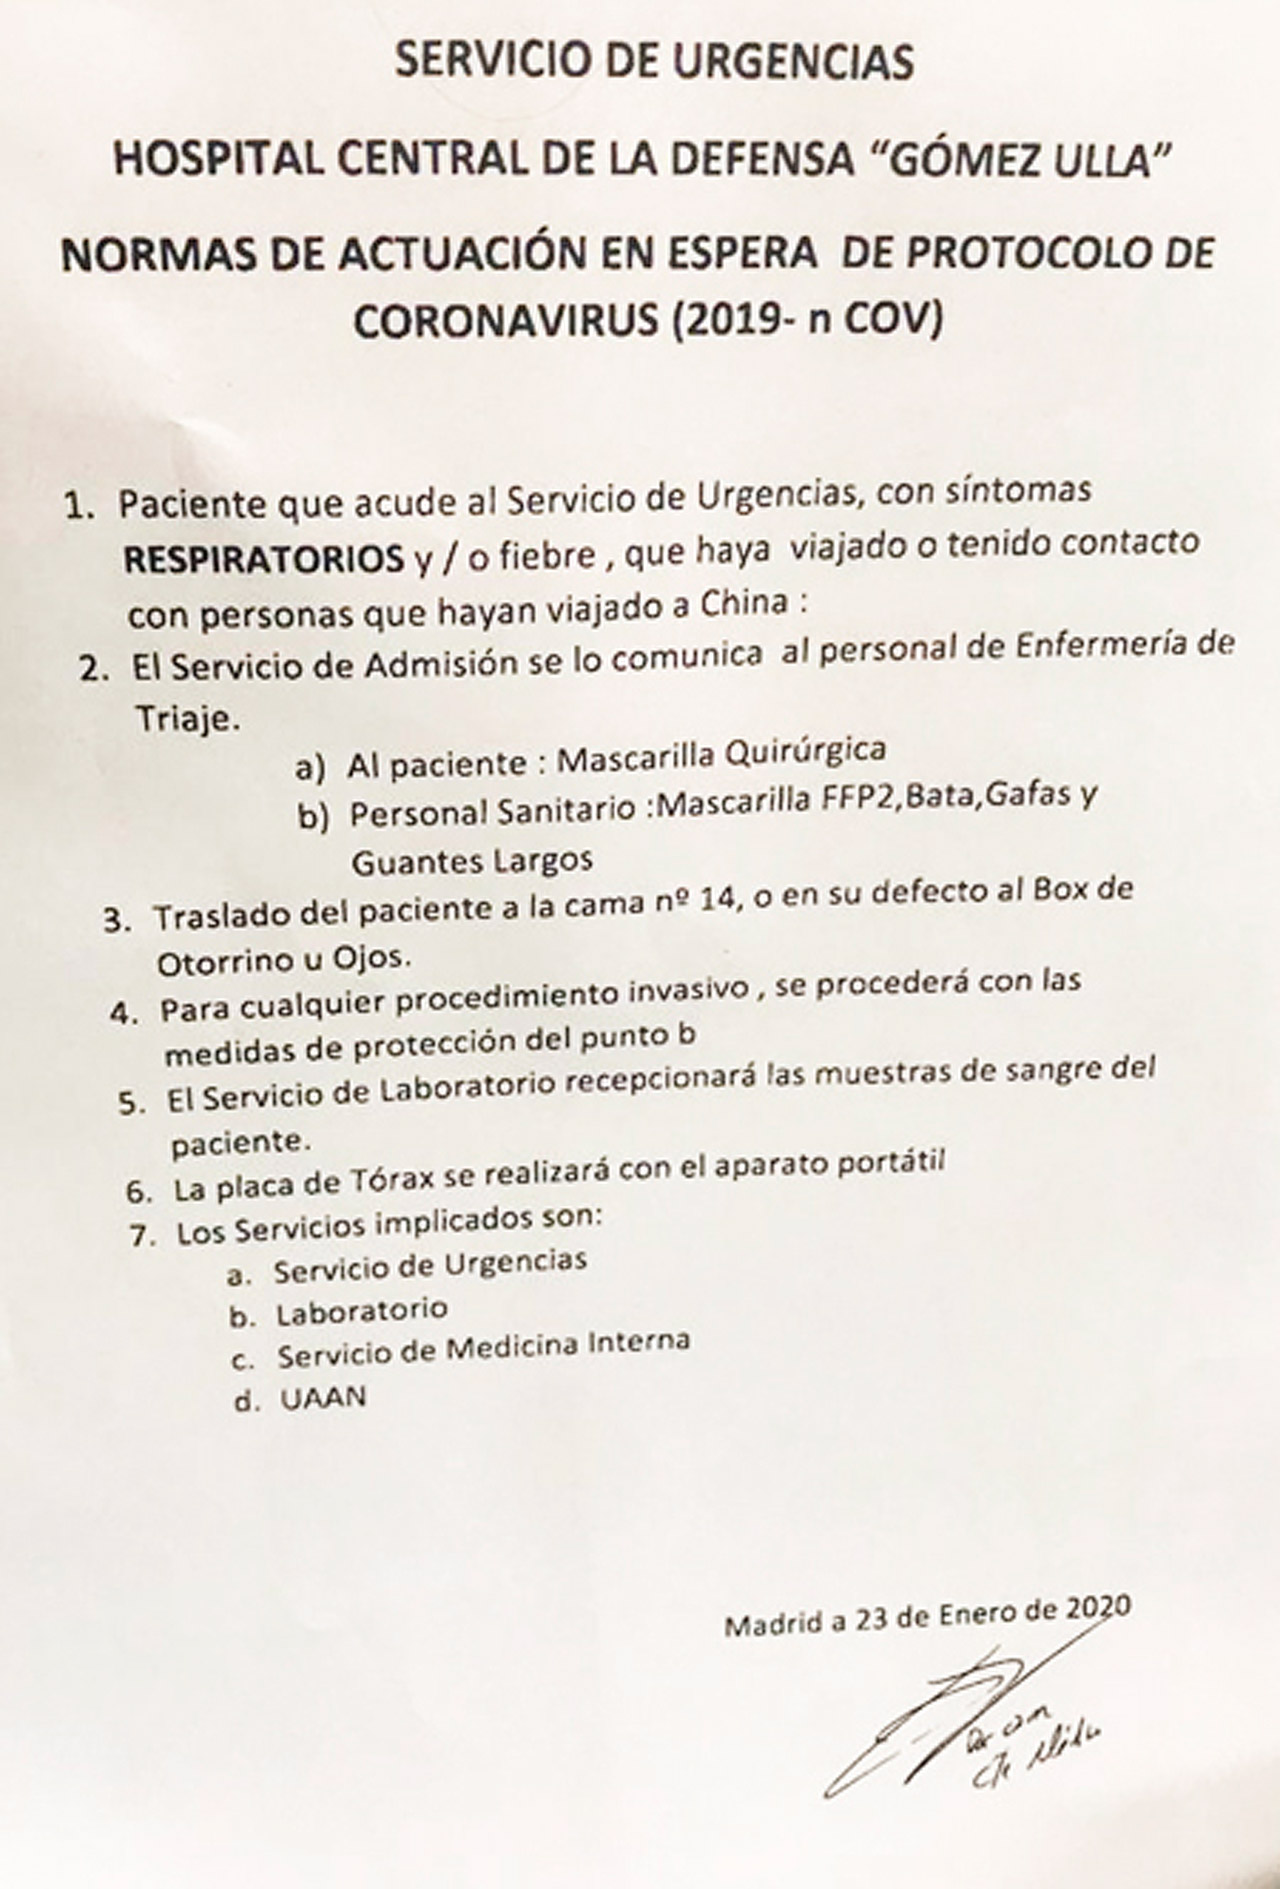 Instrucciones recibidas por el personal de Urgencias del Gómez Ulla.